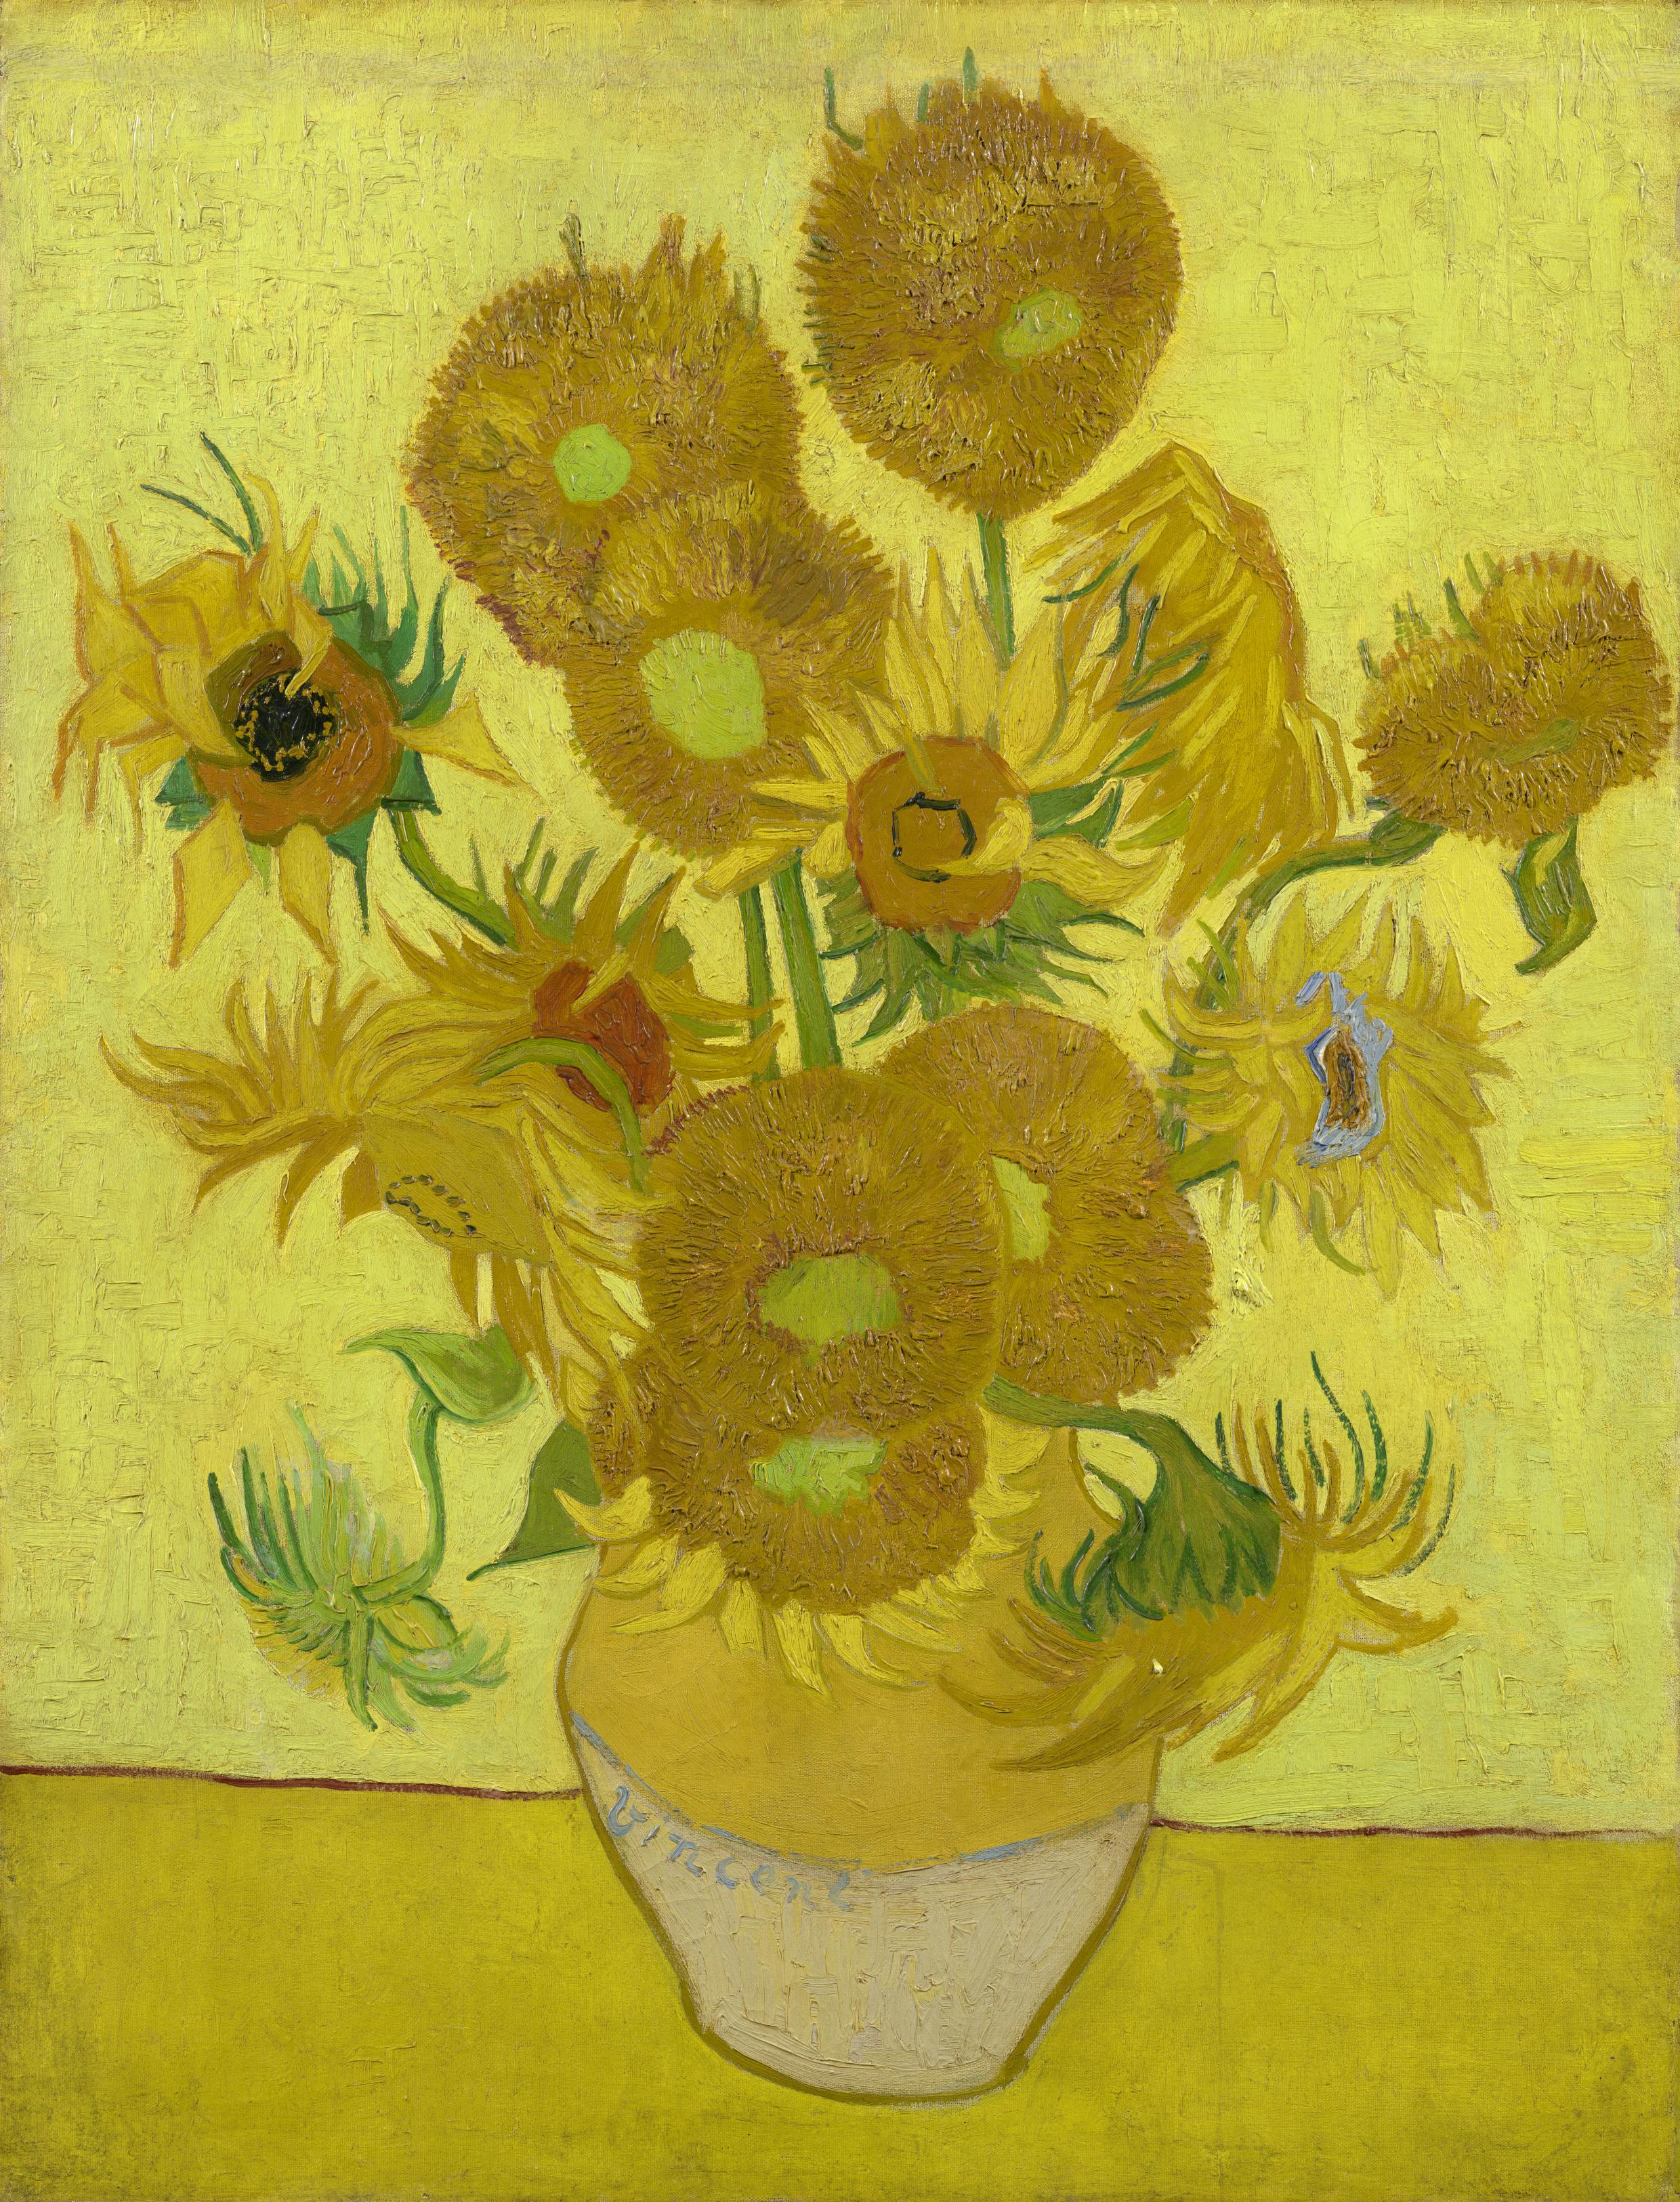 Słoneczniki by Vincent van Gogh - styczeń1889 - 95 x 73 cm 